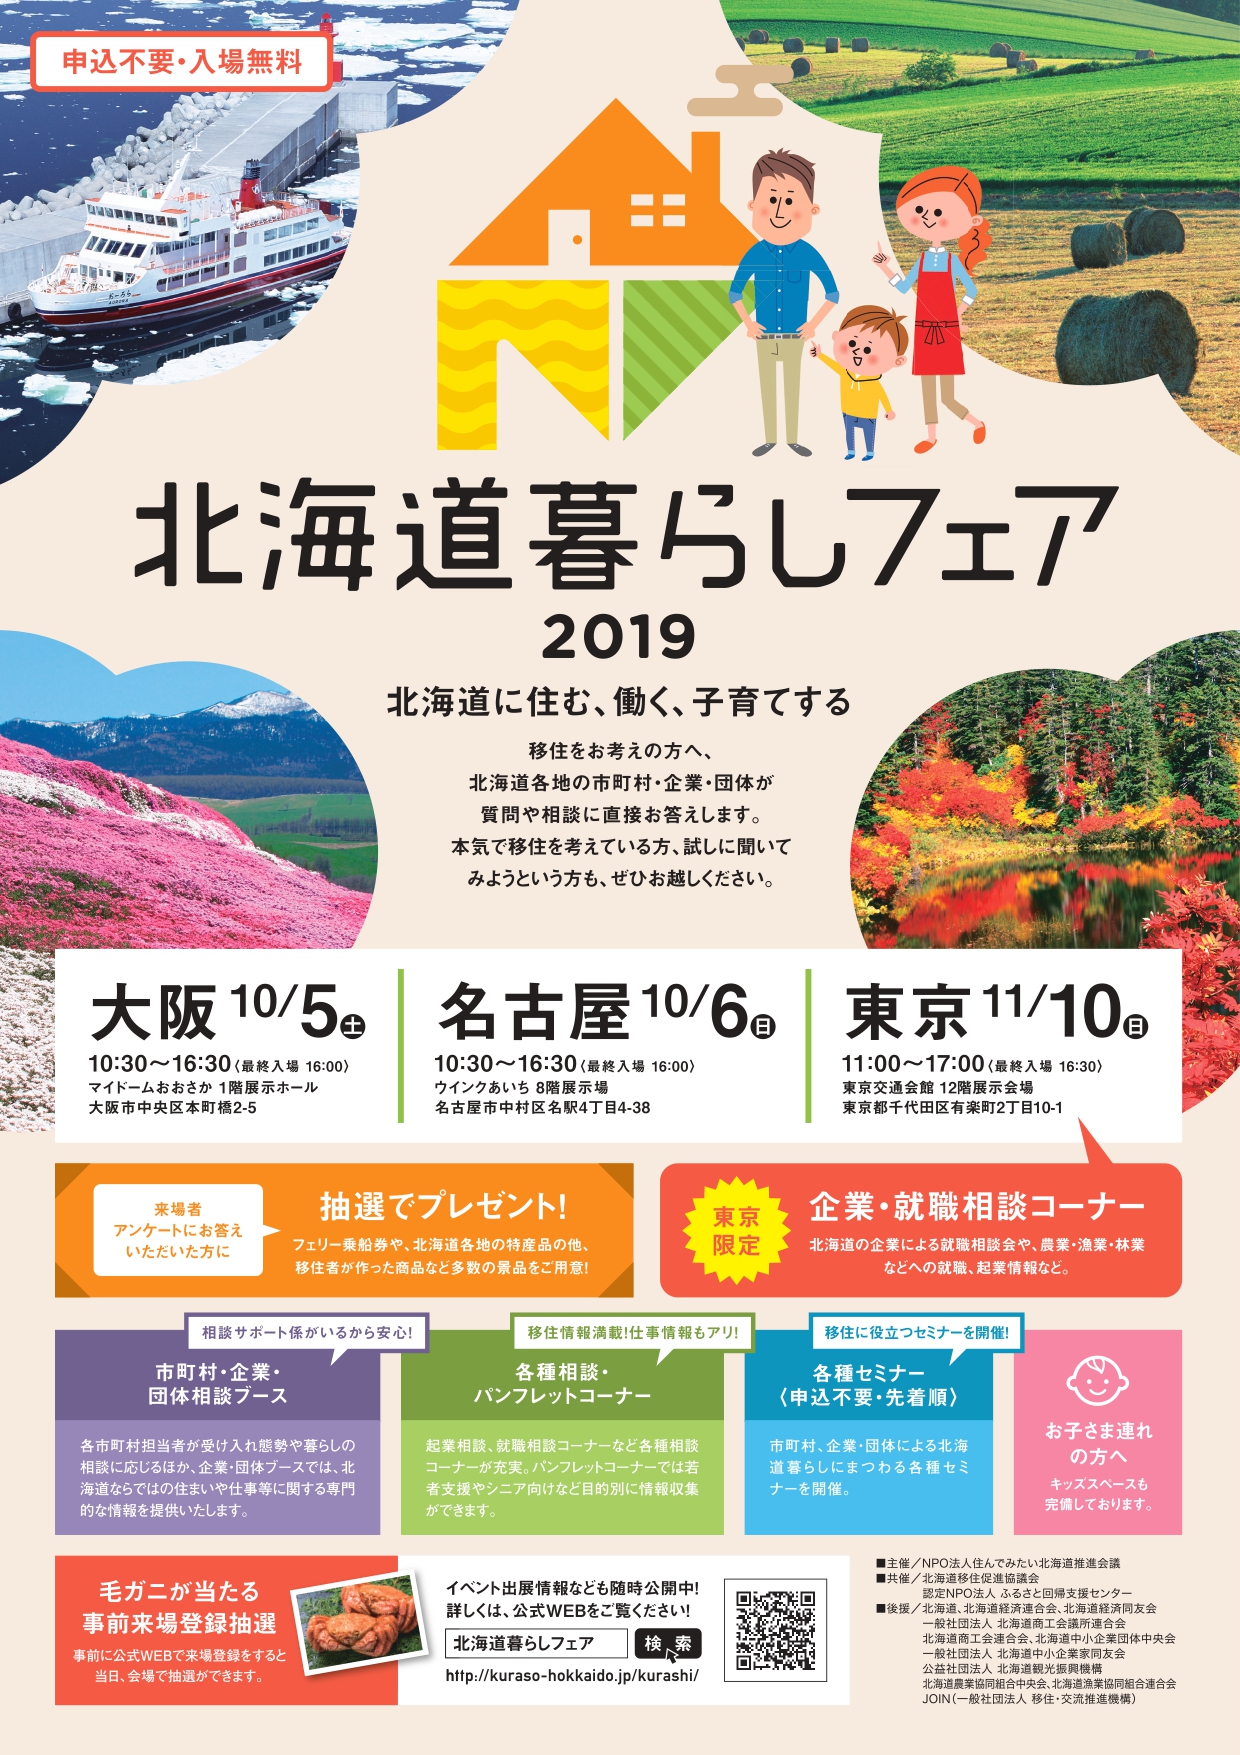 北海道暮らしフェア2019【東京会場】 | 移住関連イベント情報